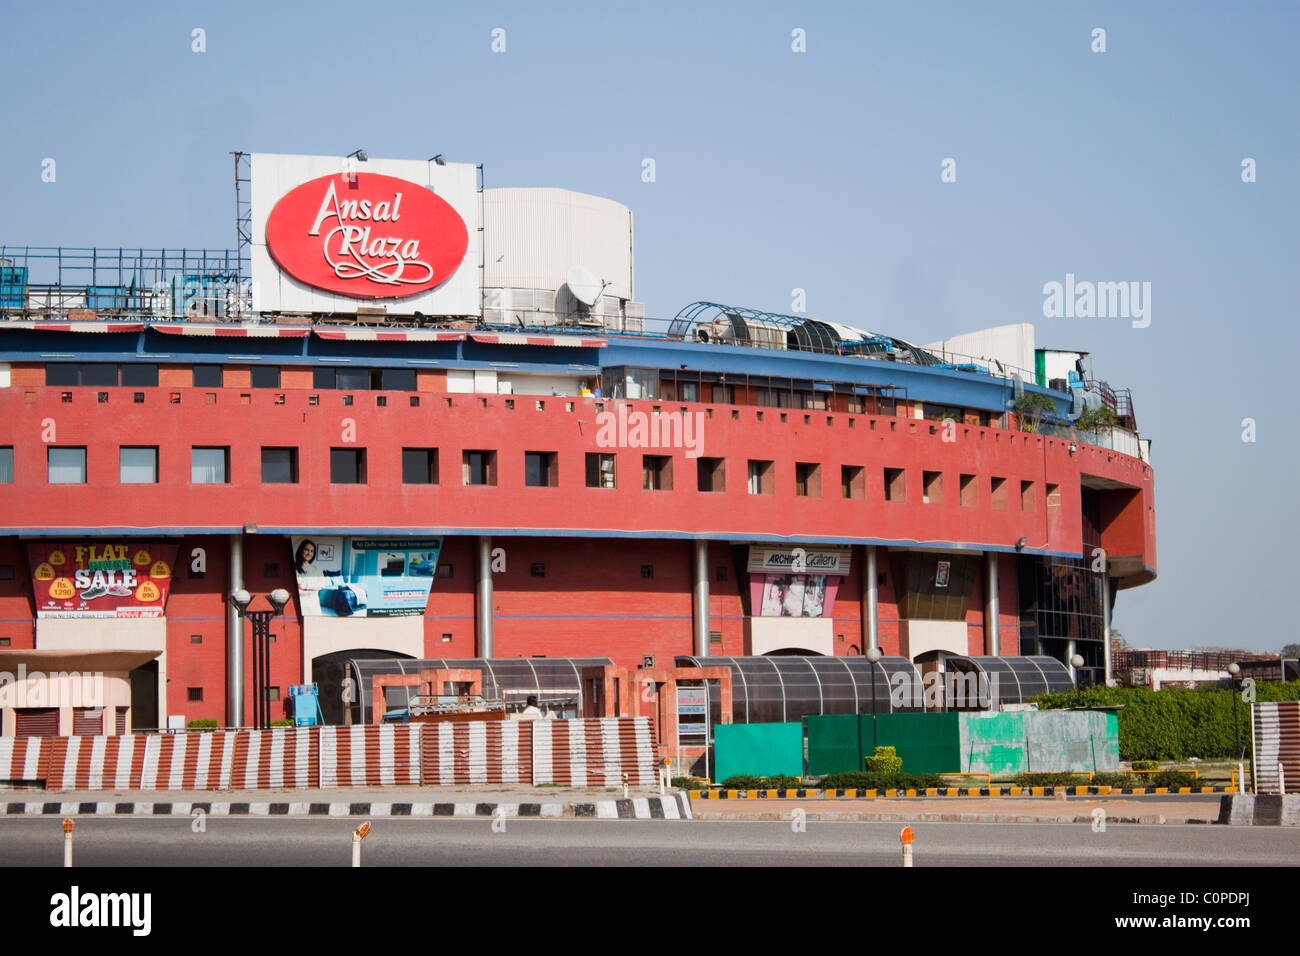 Façade d'un centre commercial à l'arrière-plan, Ansal Plaza, New Delhi, Inde Banque D'Images